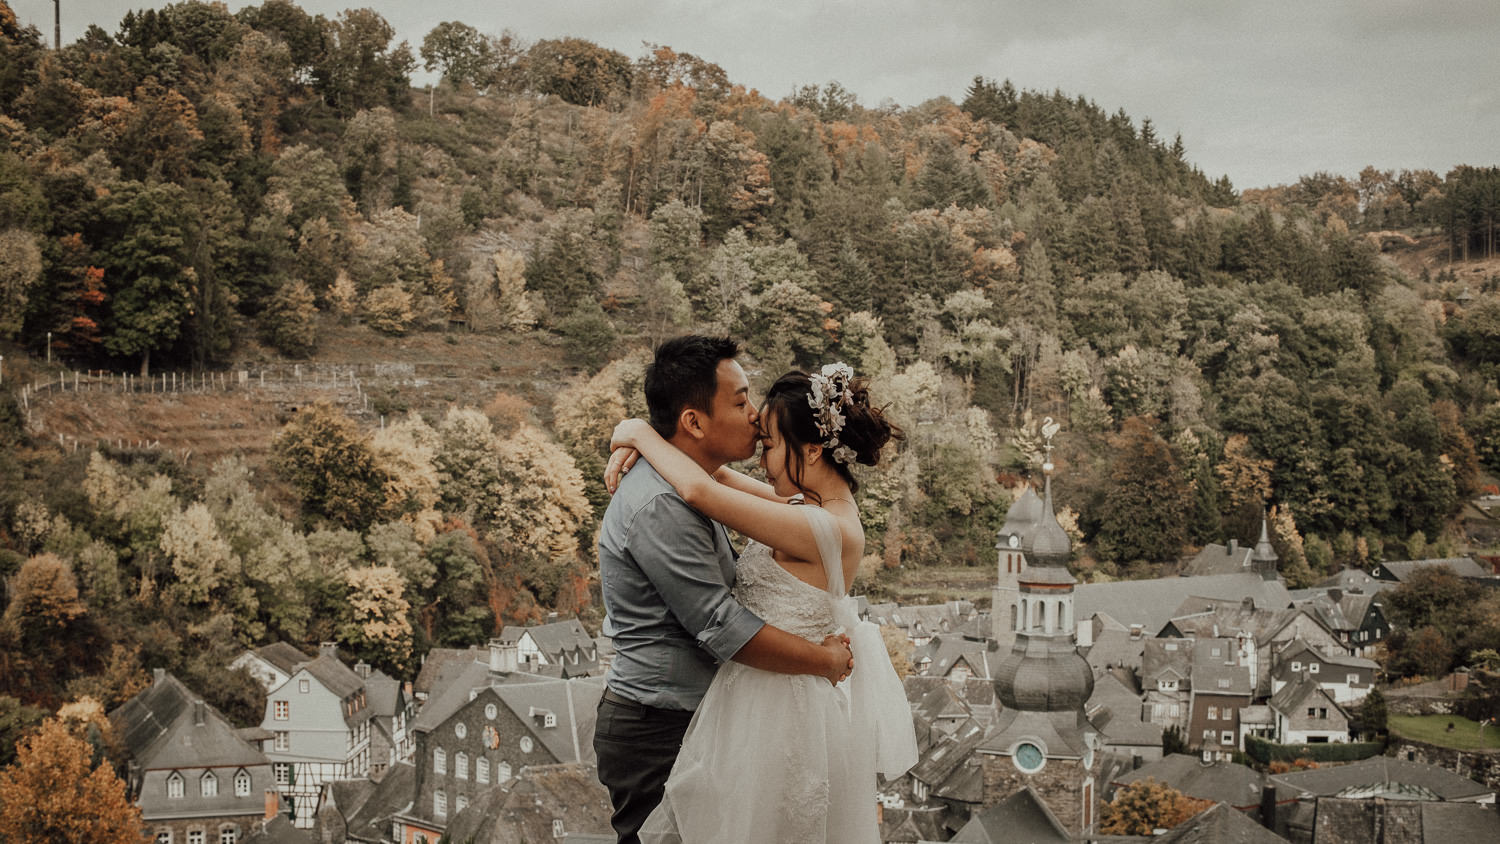 Hochzeitsfotos-Hochzeitslocation-Würzburg-Hochzeitsfotograf-Aachen-Köln-NRW-Bonn-Top-Hochzeitsfotografen-Reportage-Storytelling-Preise-Kevin Biberbach-KEVIN Fotografie-03-2.jpg